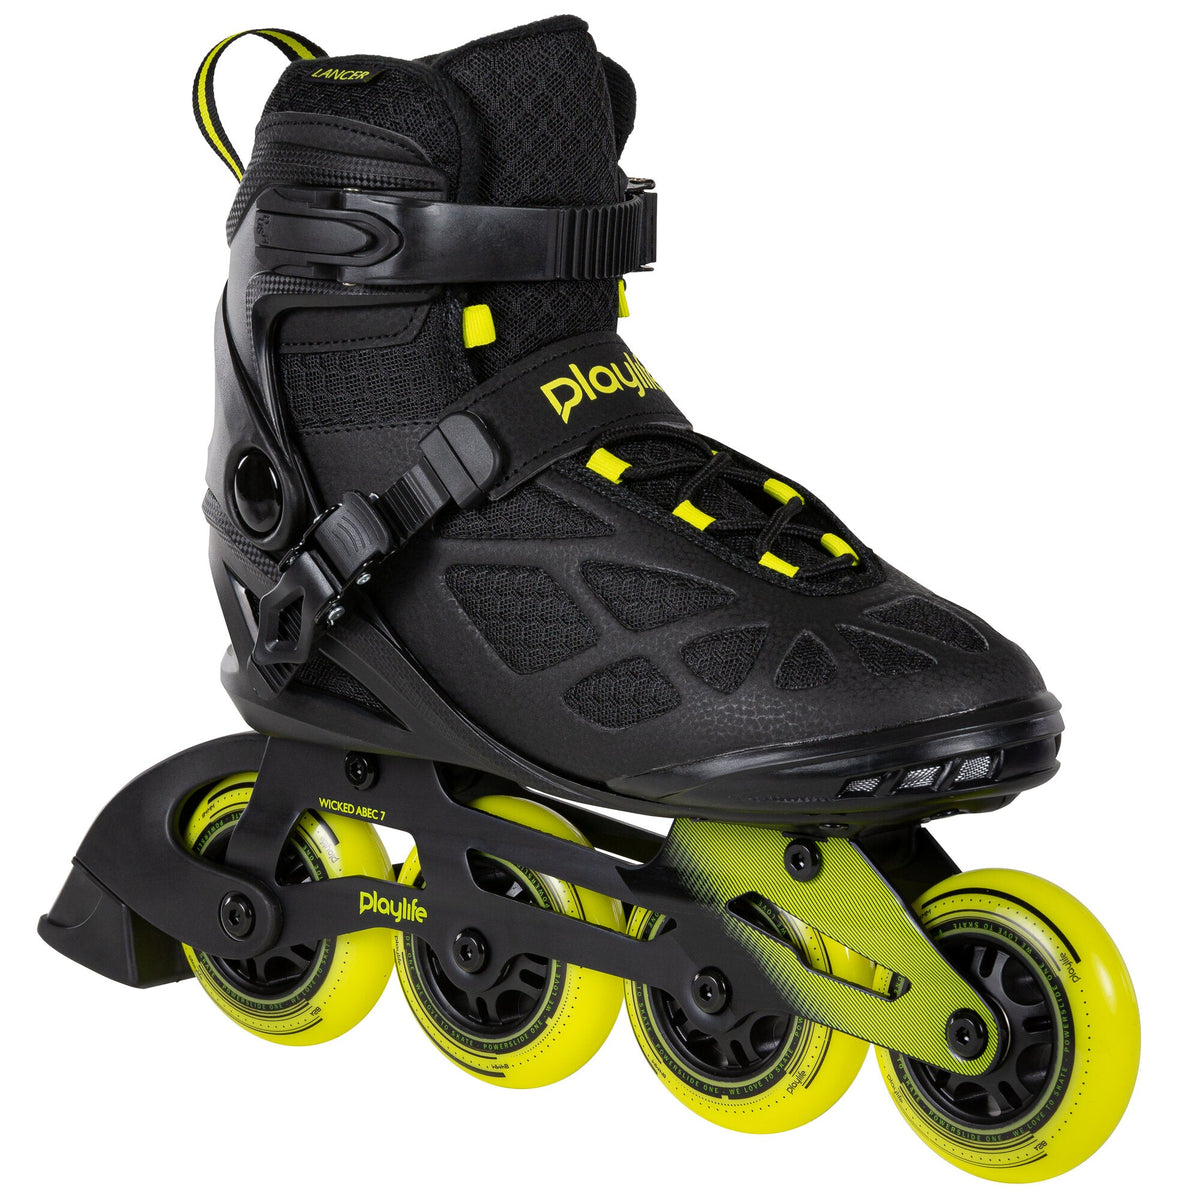 Playlife Lancer 84 Skate - Black/Yellow Inline Rec Skates